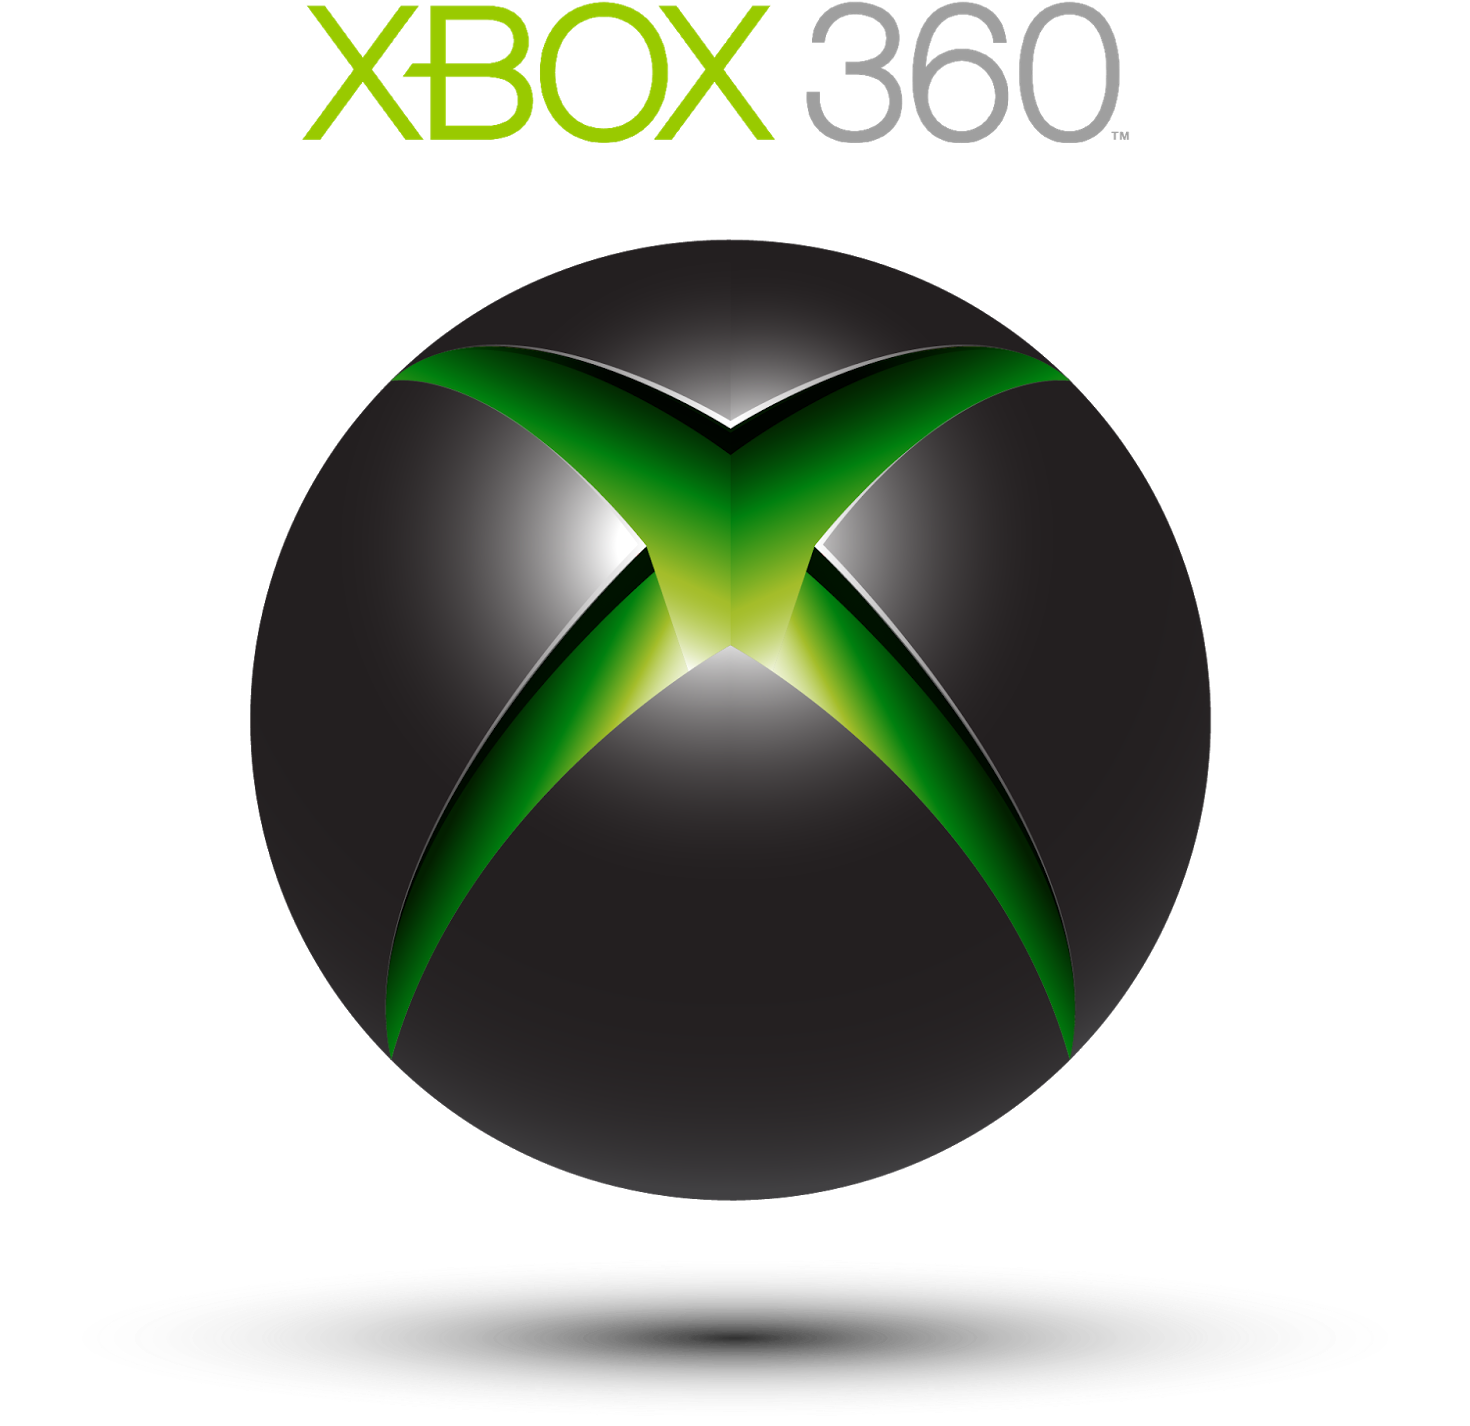 Ok Sau Khi Đã Nhìn Ngắm Xong Rồi Thì Ta Bắt Đầu Nhé - Xbox 360 (1600x1527)